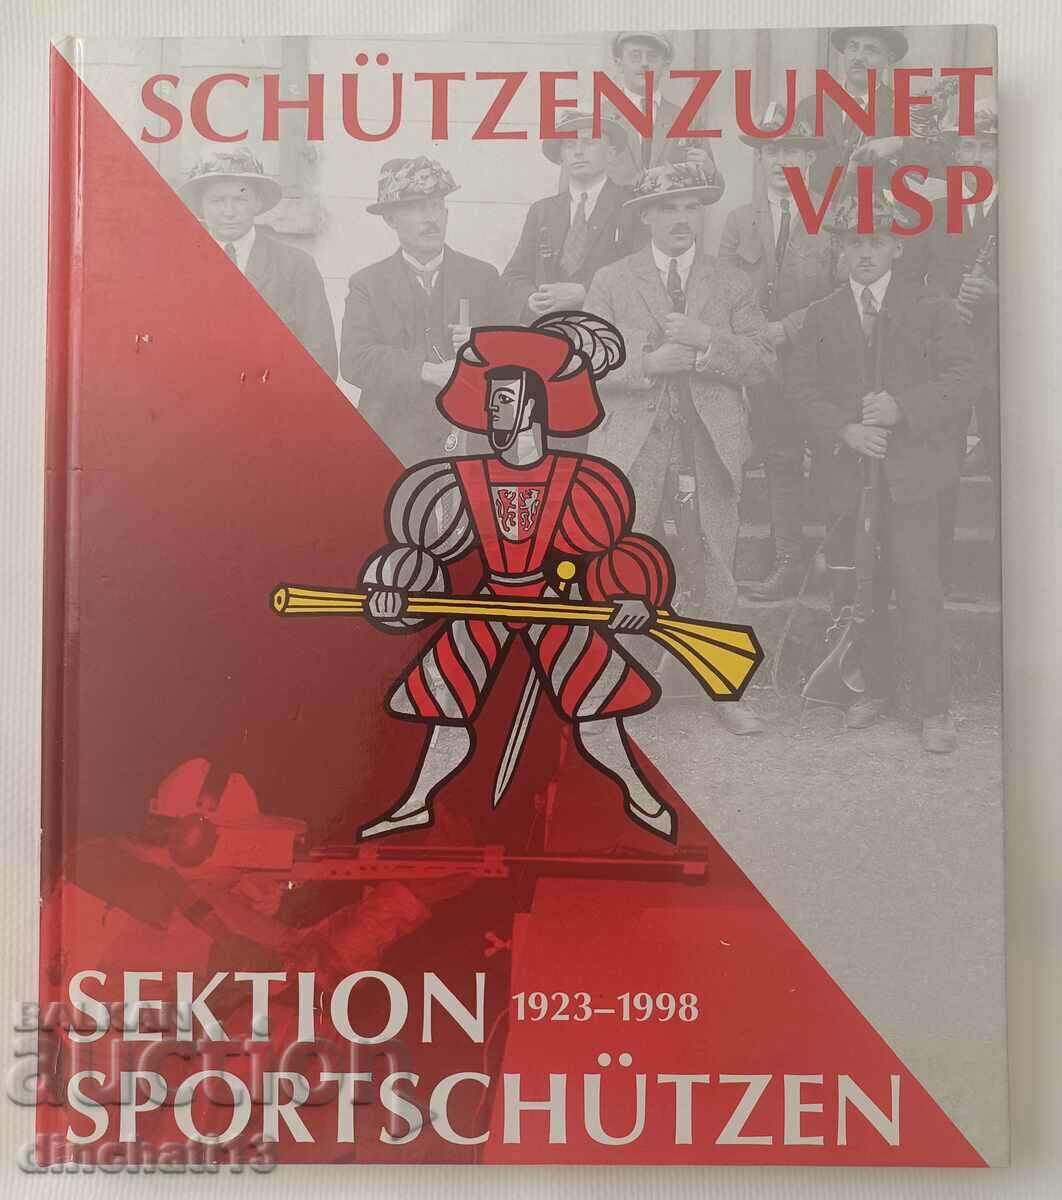 Schützenzunft Visp Sektion Sportschützen 1923 - 1998 Σκοποβολή